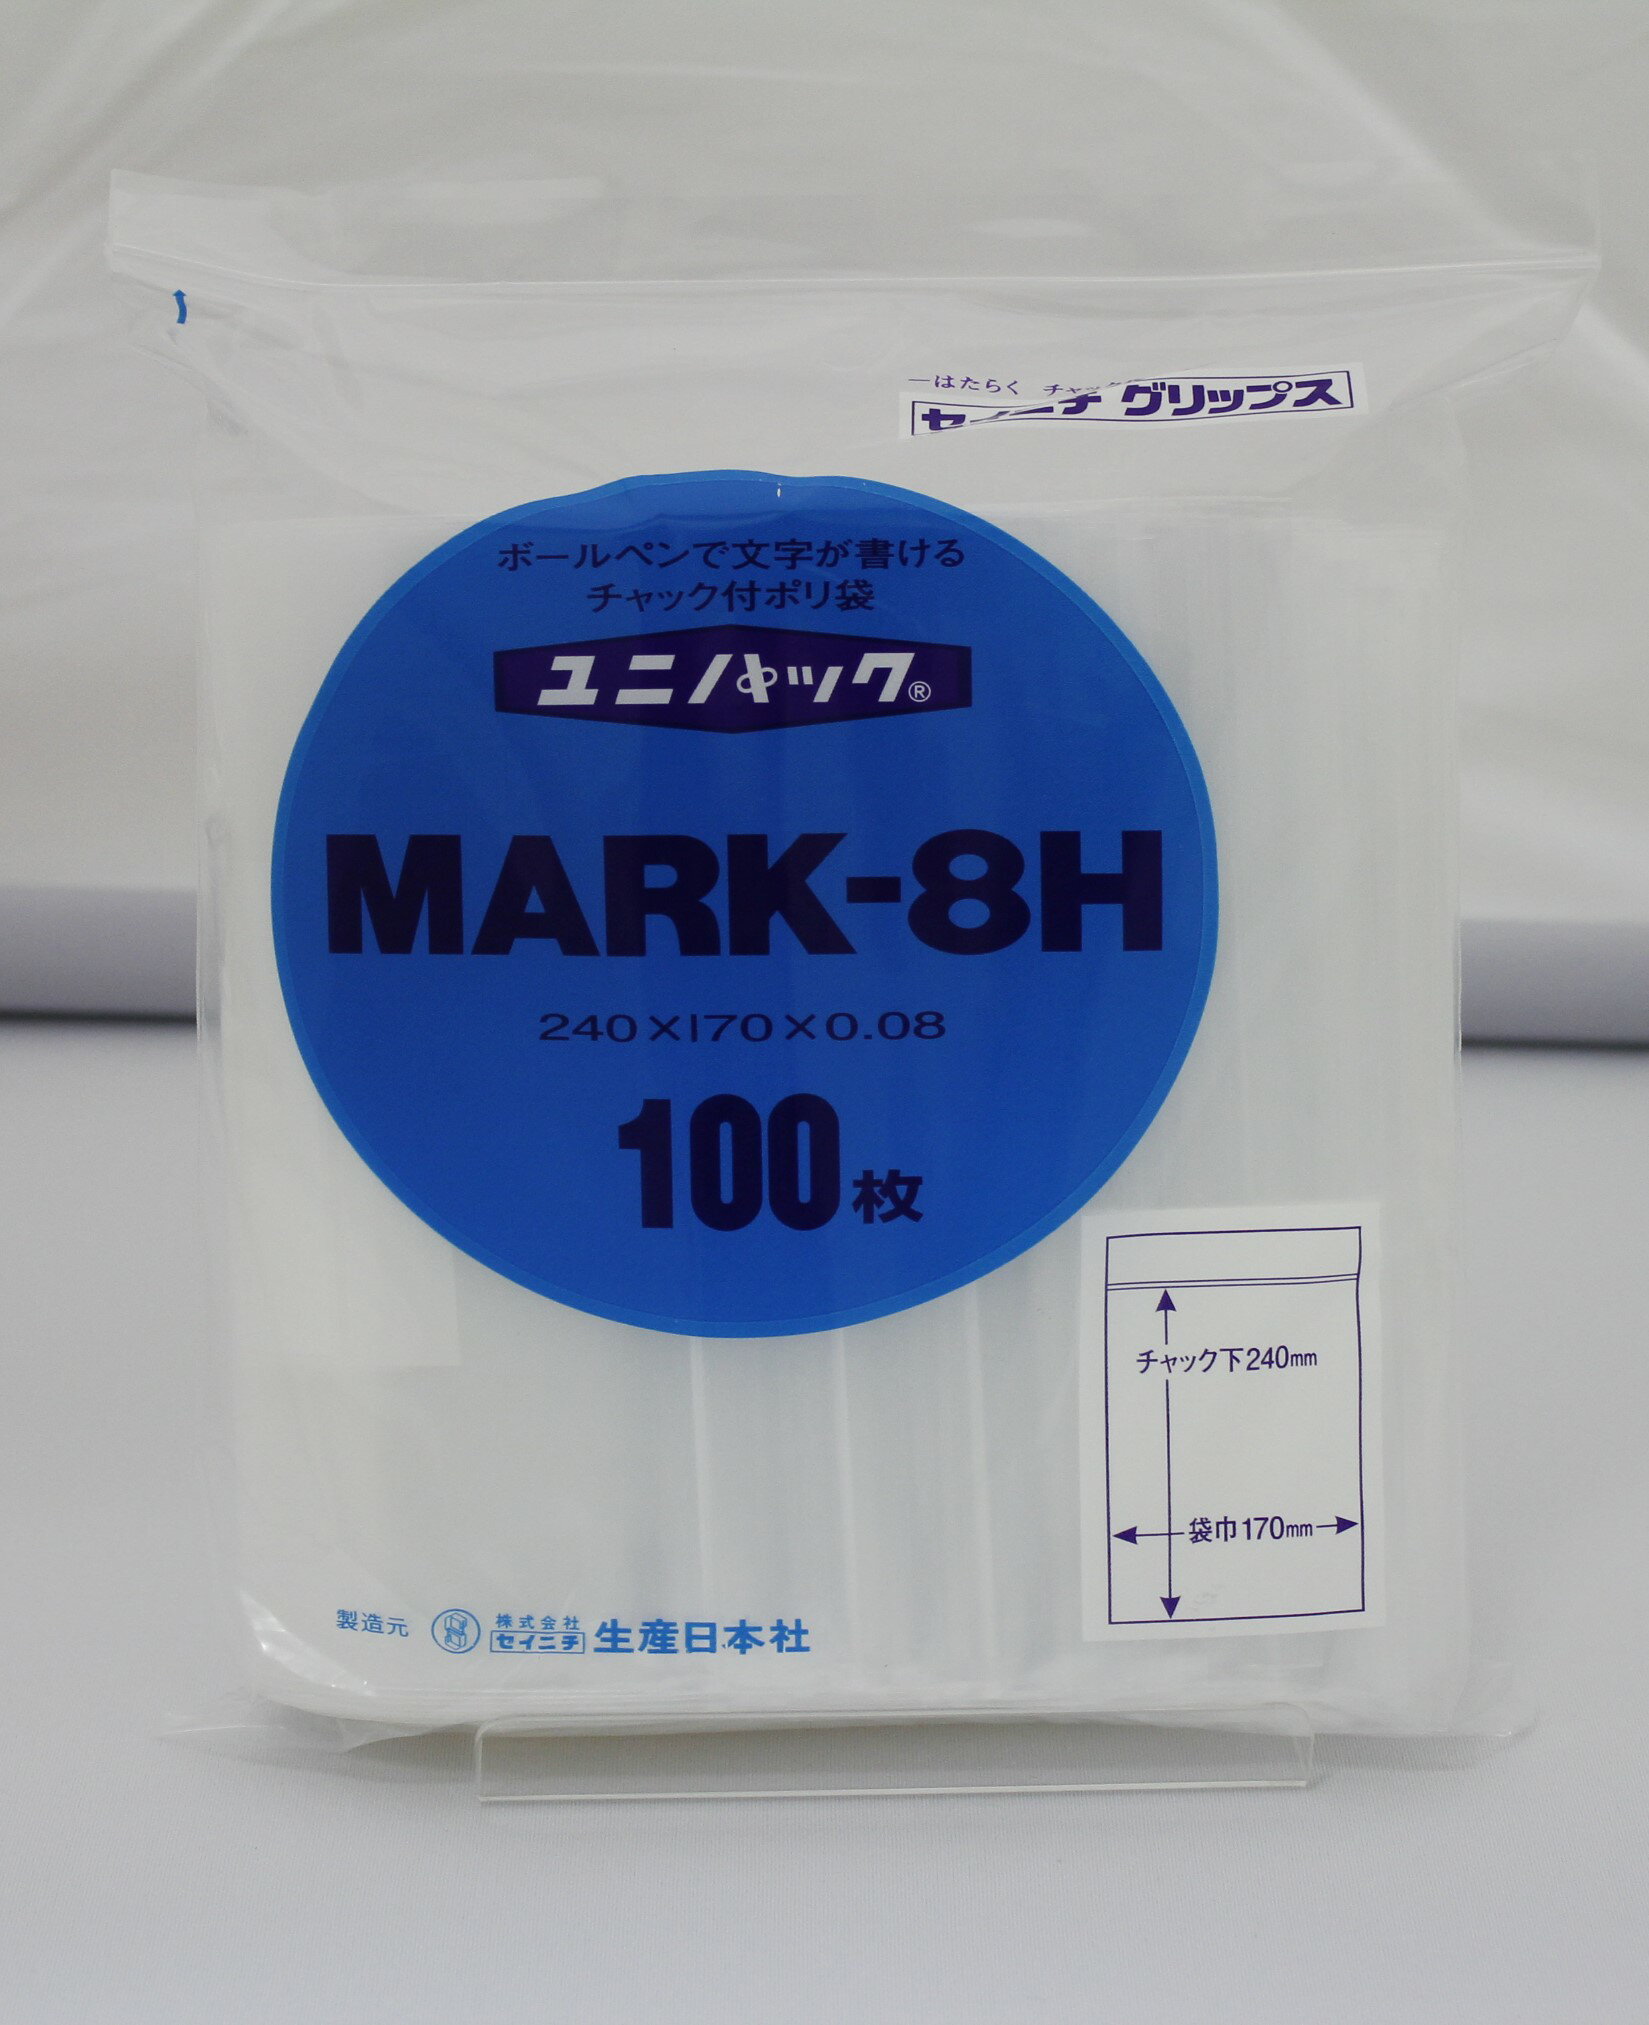 ユニパック MARK-8H チャック付ポリ袋 【100枚(1袋)】日本製白ベタ印刷部分にボールペン、サインペンなどで書き込みできます。